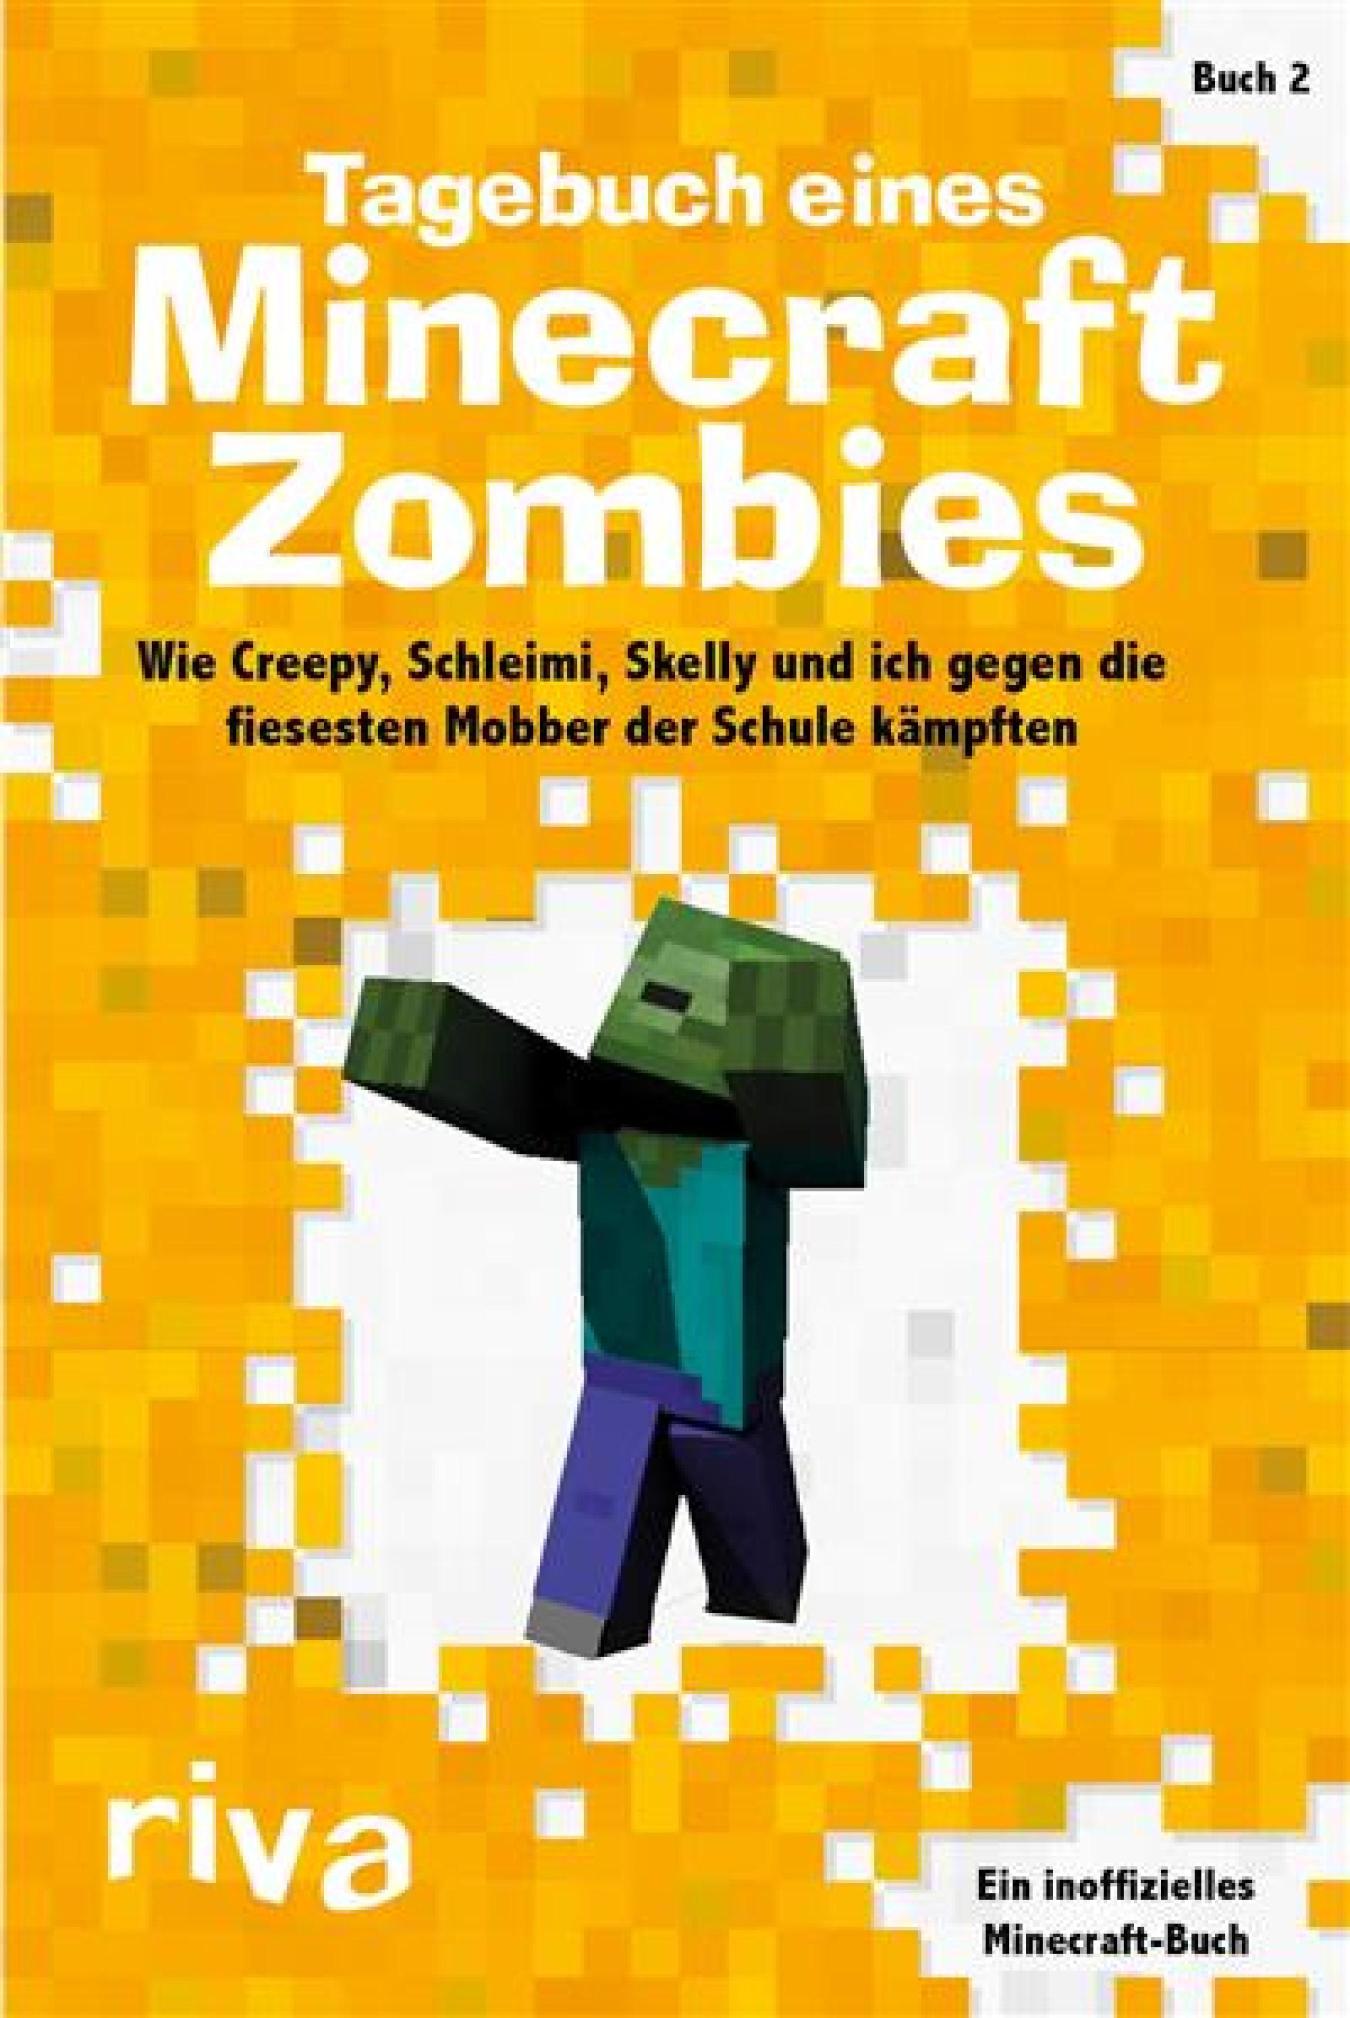 Tagebuch eines Minecraft-Zombies 2 Wie Creepy, Schleimi, Skelly und ich gegen die fiesesten Mobber der Schule kämpften